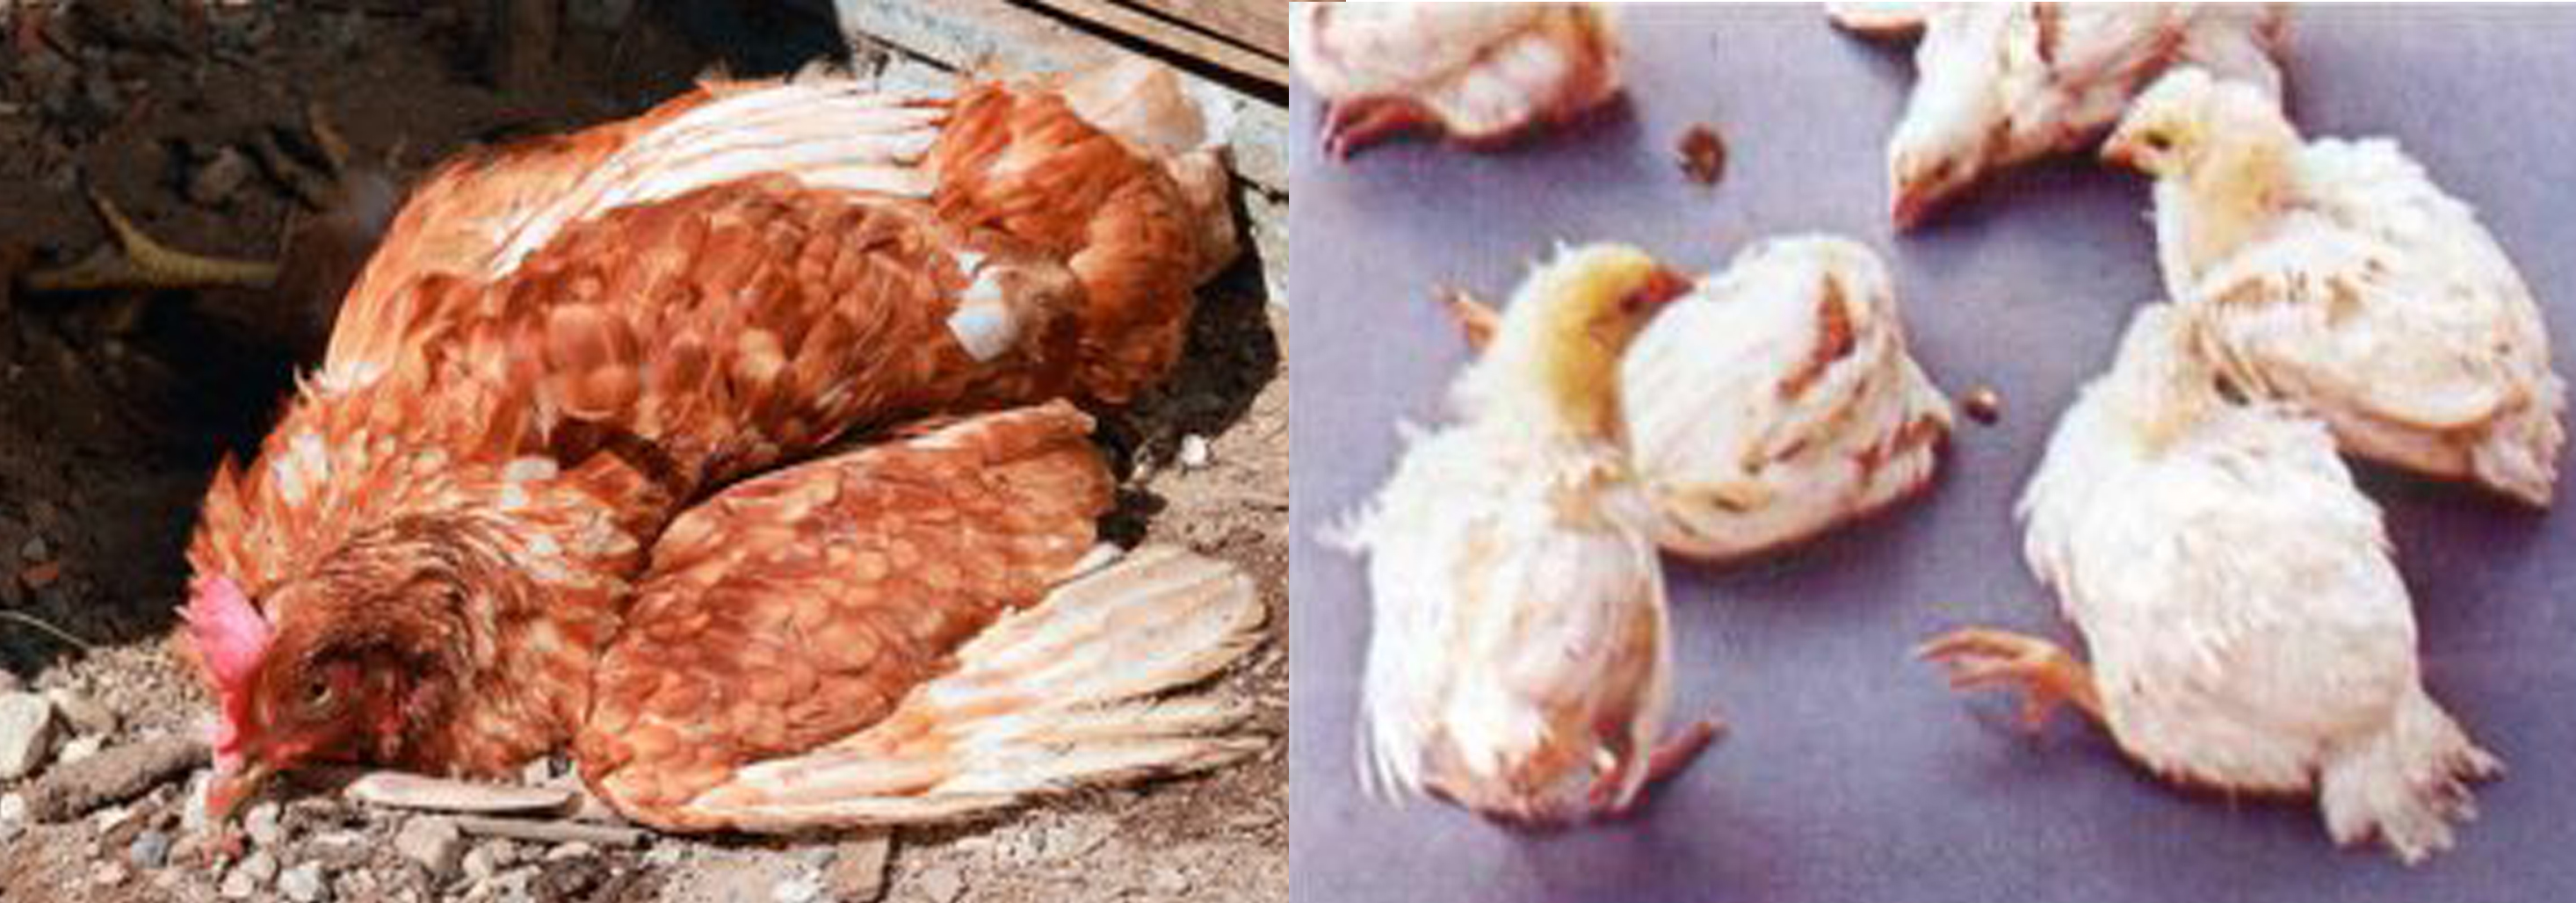 Симптомы инфекционного бронхита у кур и методы лечения заболевшей птицы